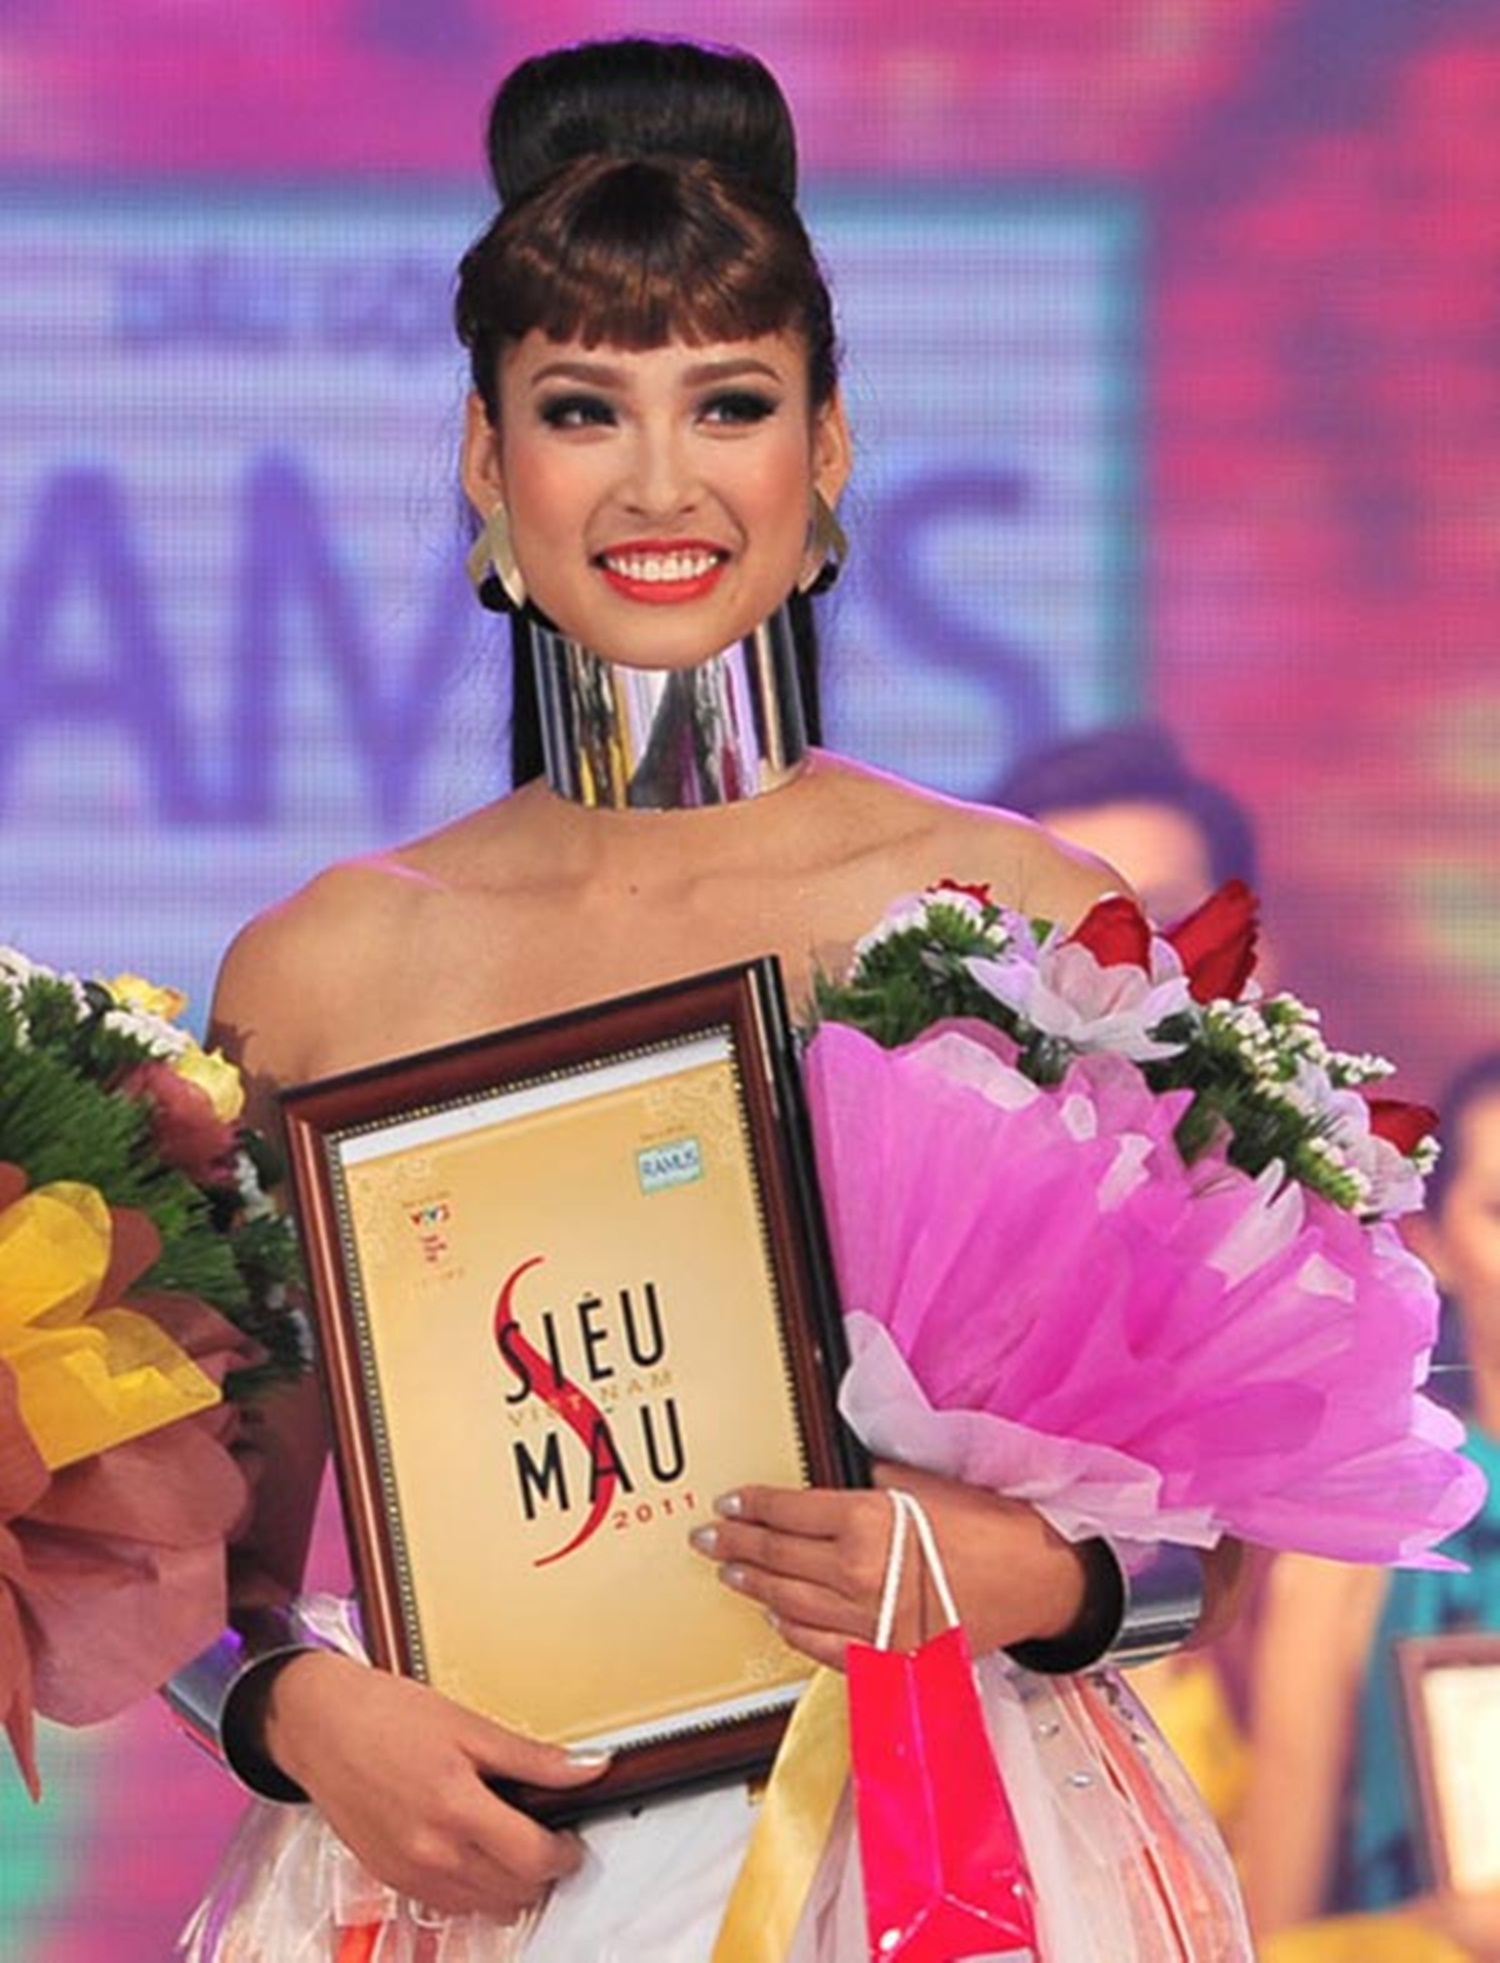 Vương Thu Phương từng đăng quang “Siêu mẫu Việt Nam 2011”. Thu Phương được đánh giá cao bởi vóc dáng đẹp, nhan sắc hài hoà, thanh tú, số đo 3 vòng: 87-64-97.